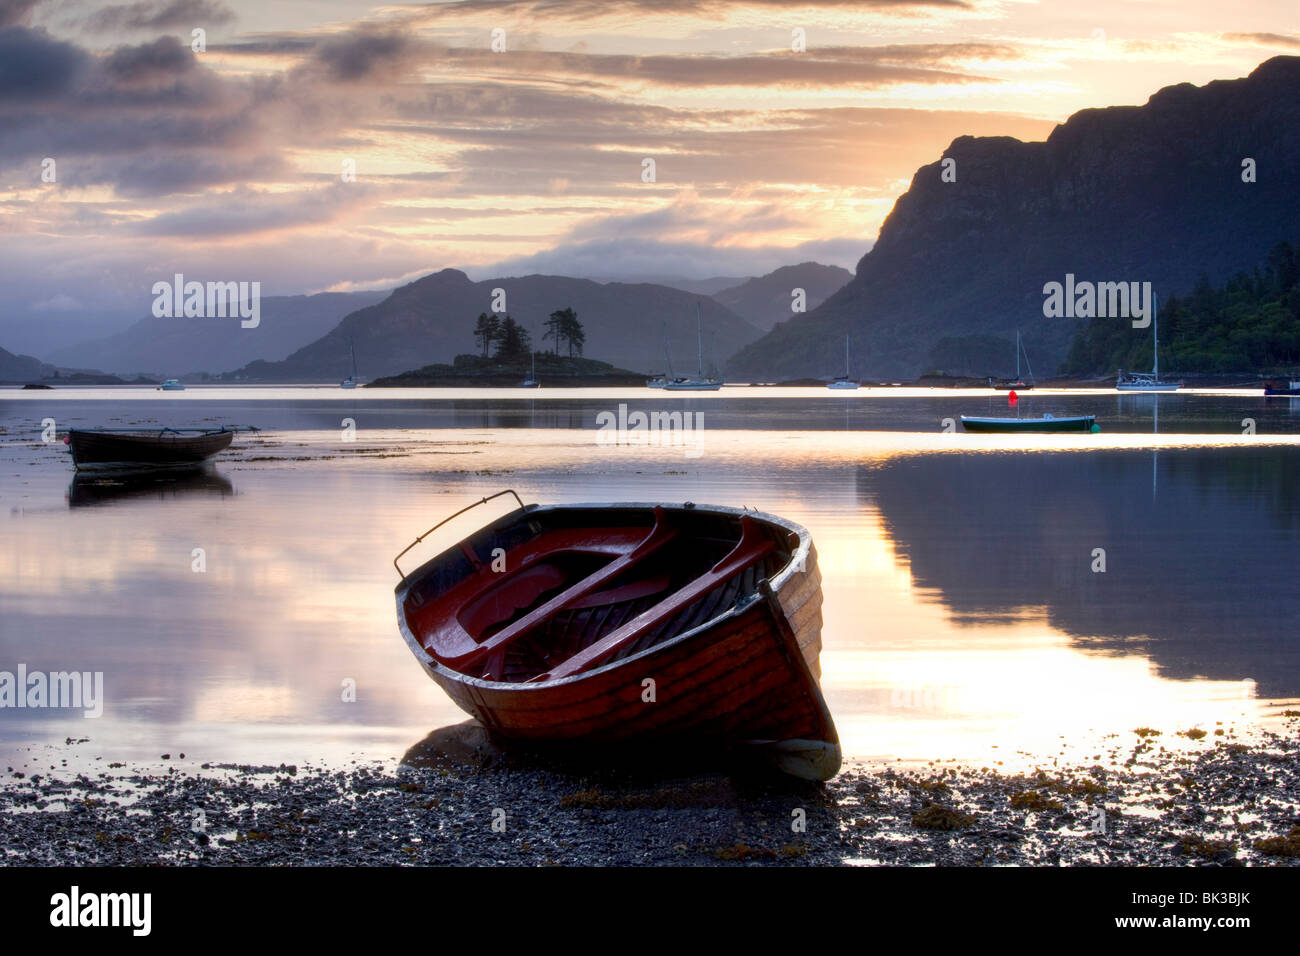 Vista del amanecer en la marea baja con bote a remo en primer plano, Plokton, cerca de Kyle de Lochalsh, Highland, Escocia, Reino Unido, Europa Foto de stock